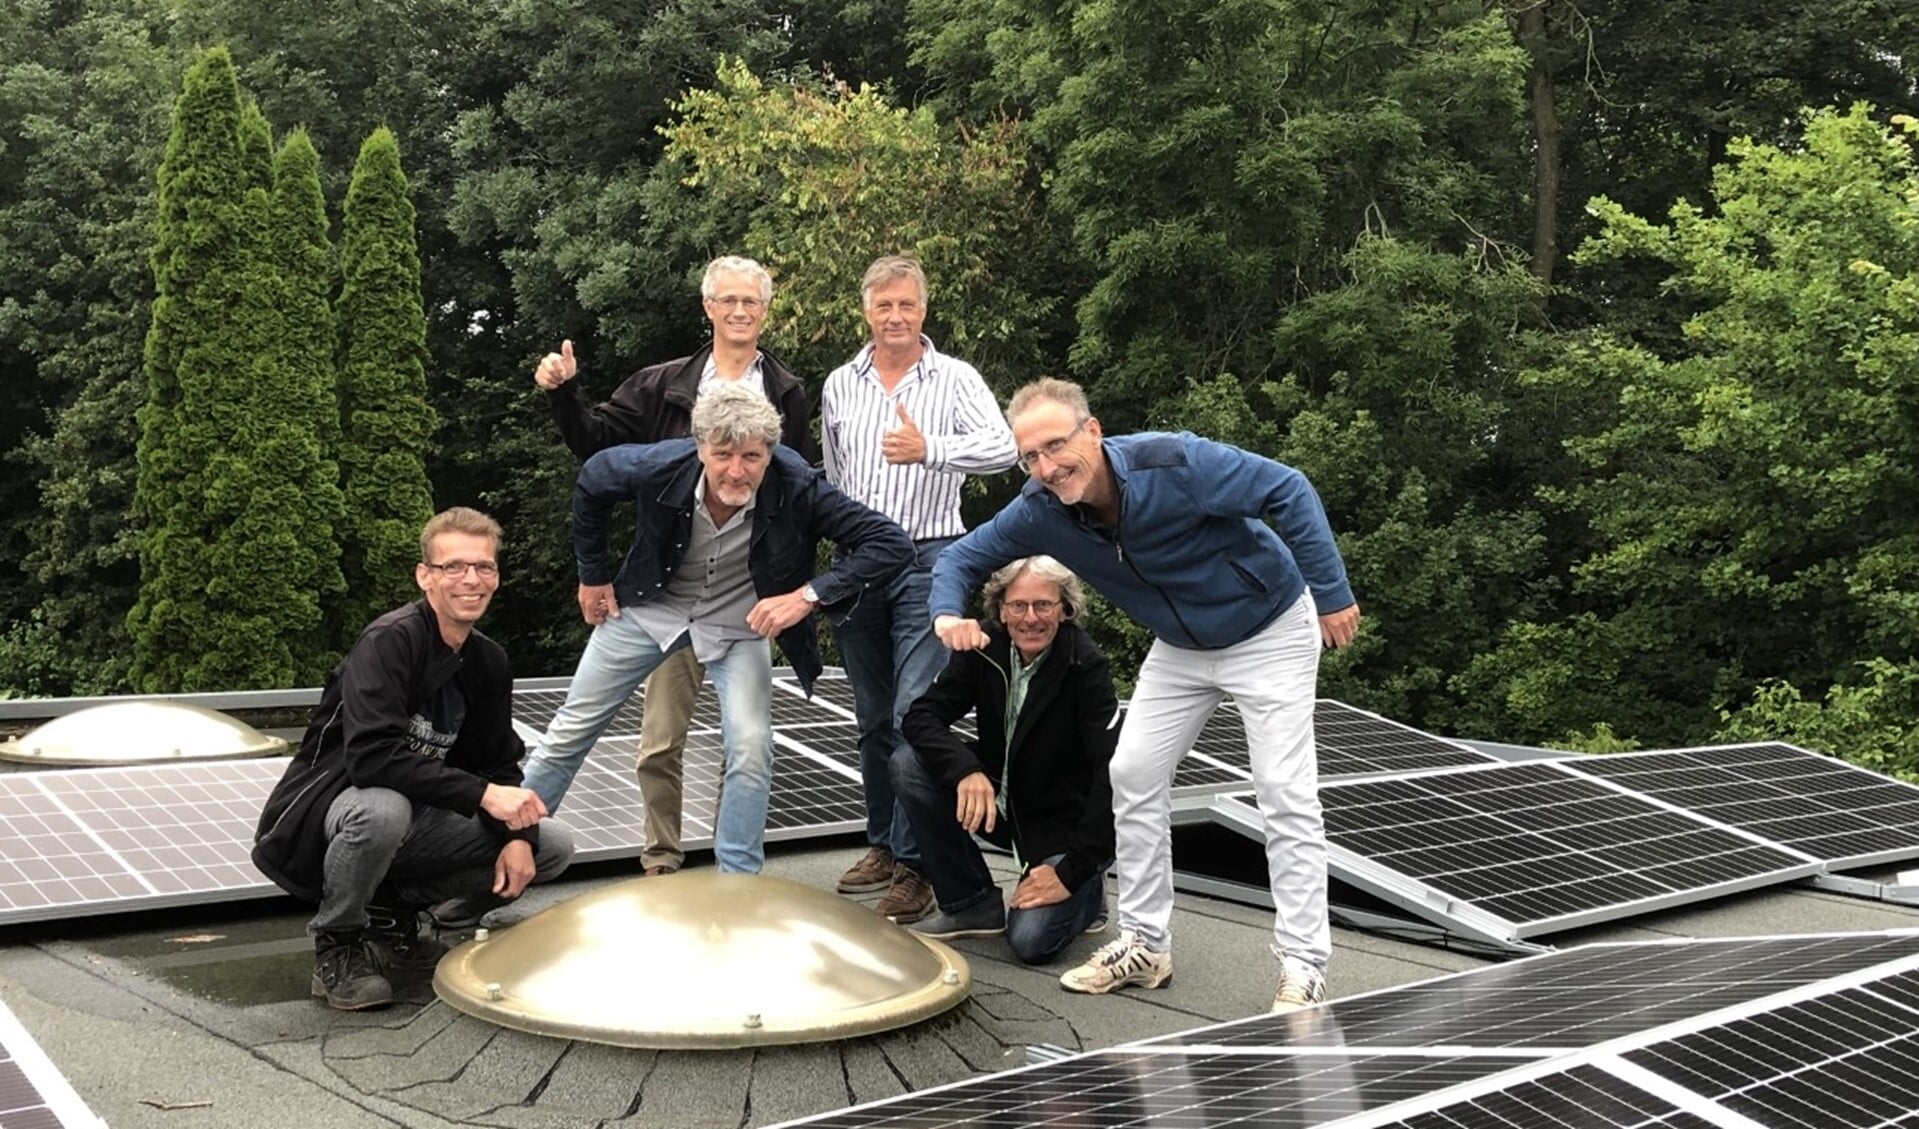 Het projectteam bewondert de zonnepanelen op het dak.